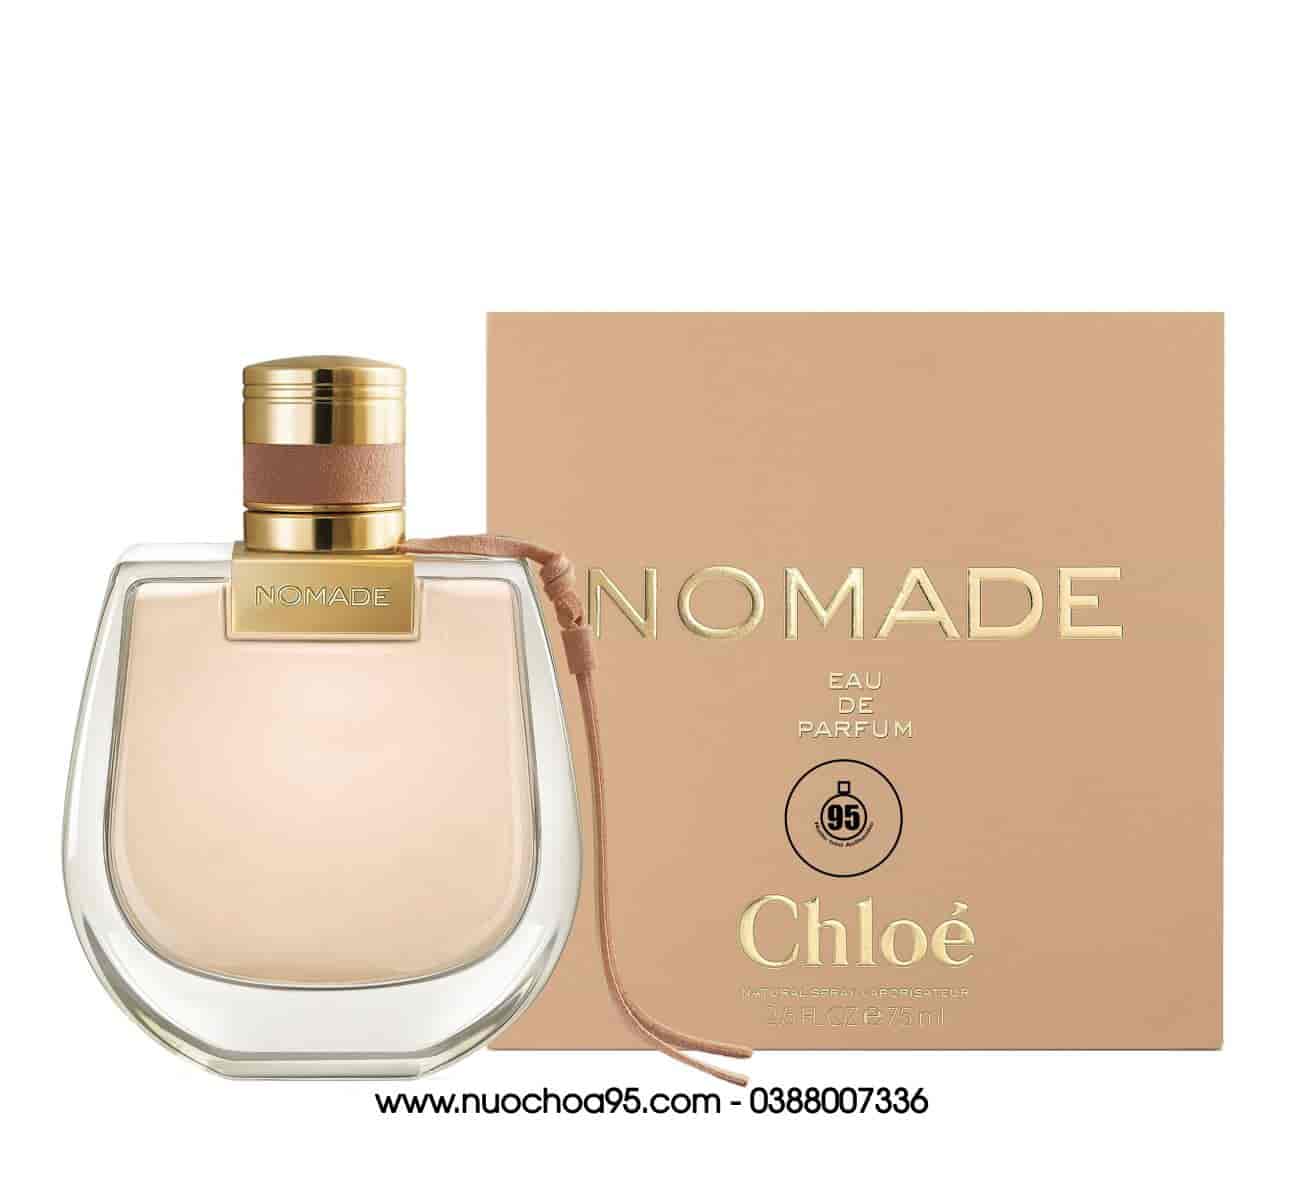 Nước hoa Chloe Nomade Eau de Parfum 